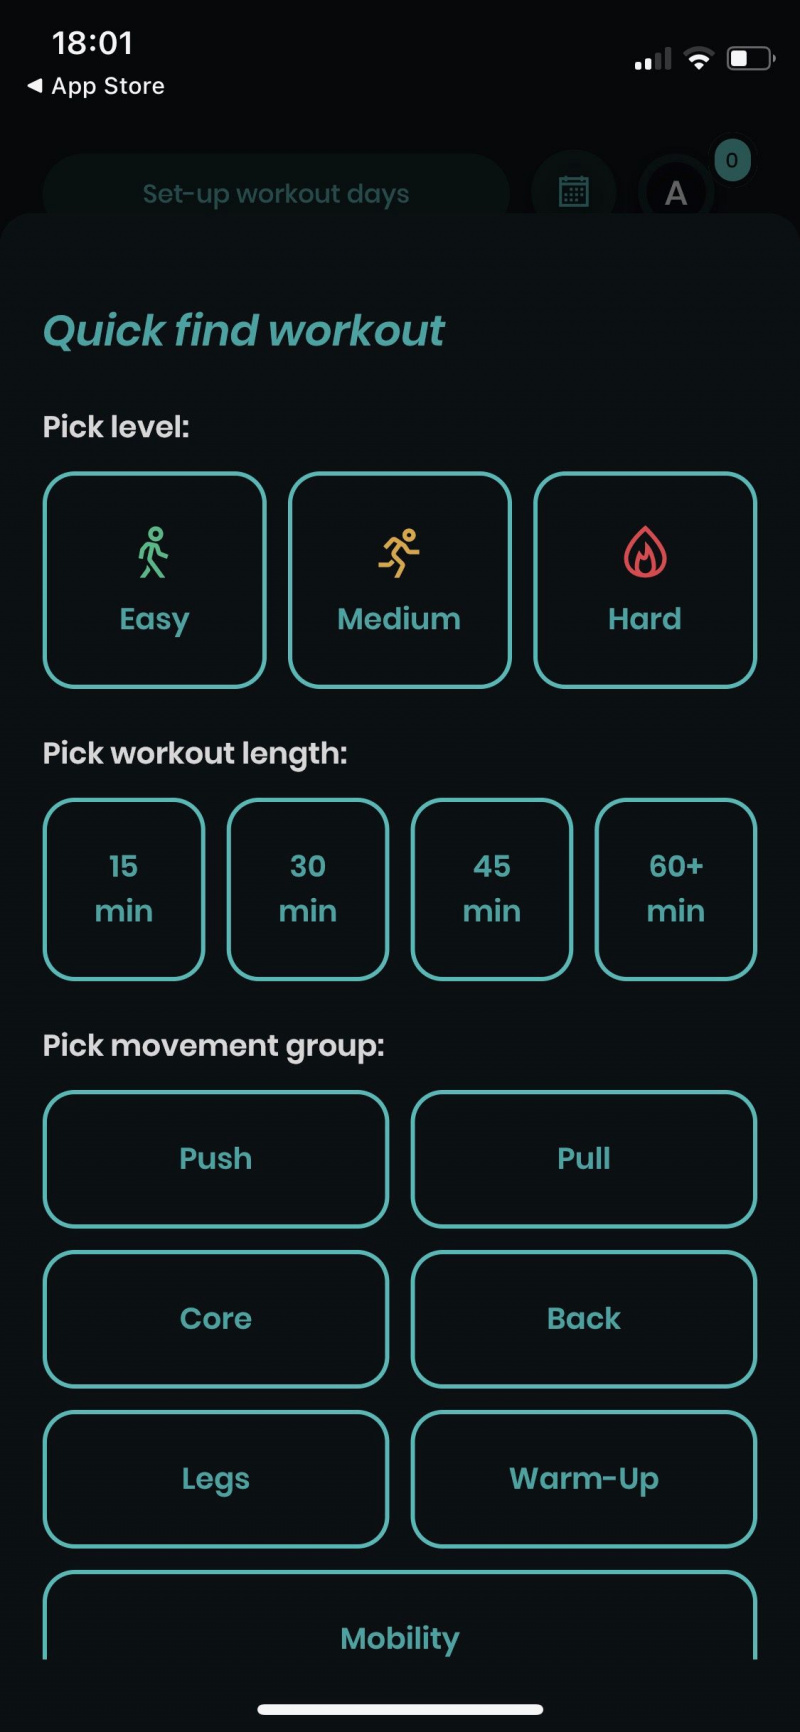   Snímka obrazovky aplikácie Caliverse zobrazujúca cvičenie rýchleho nájdenia